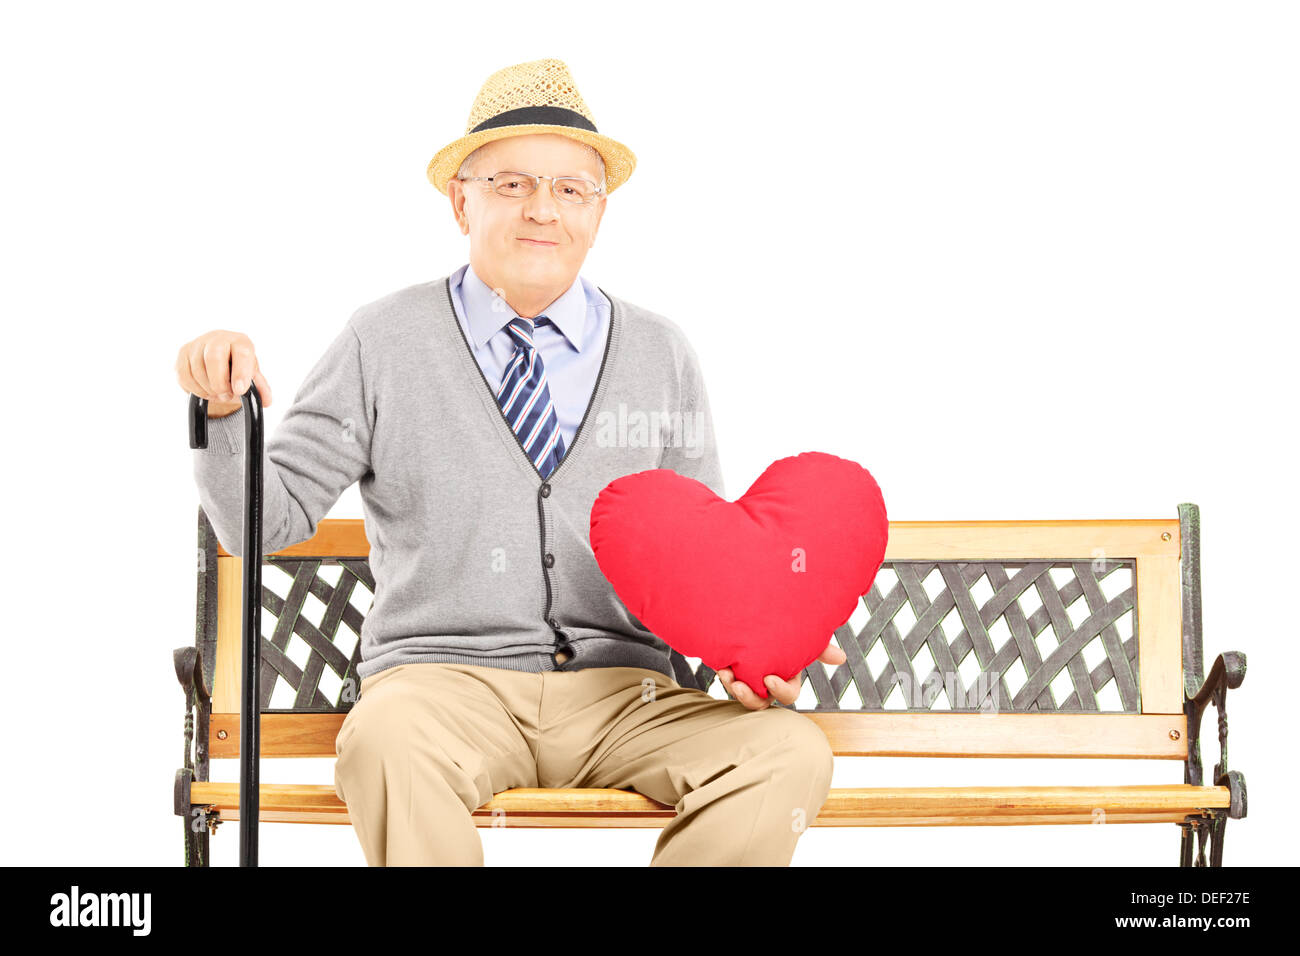 Hauts homme assis sur un banc en bois et tenant un coeur rouge Banque D'Images